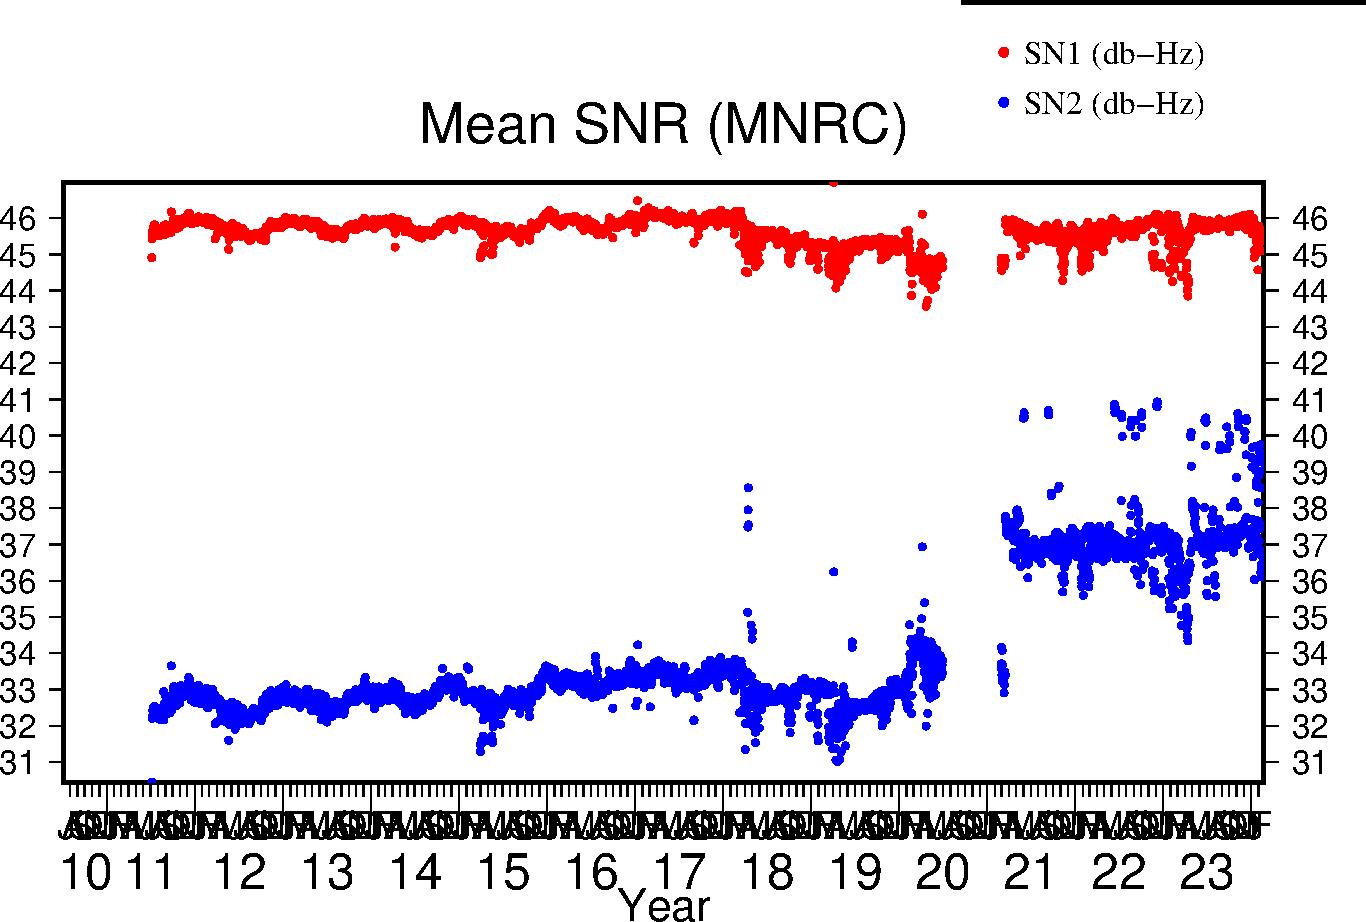 MNRC SNR last year